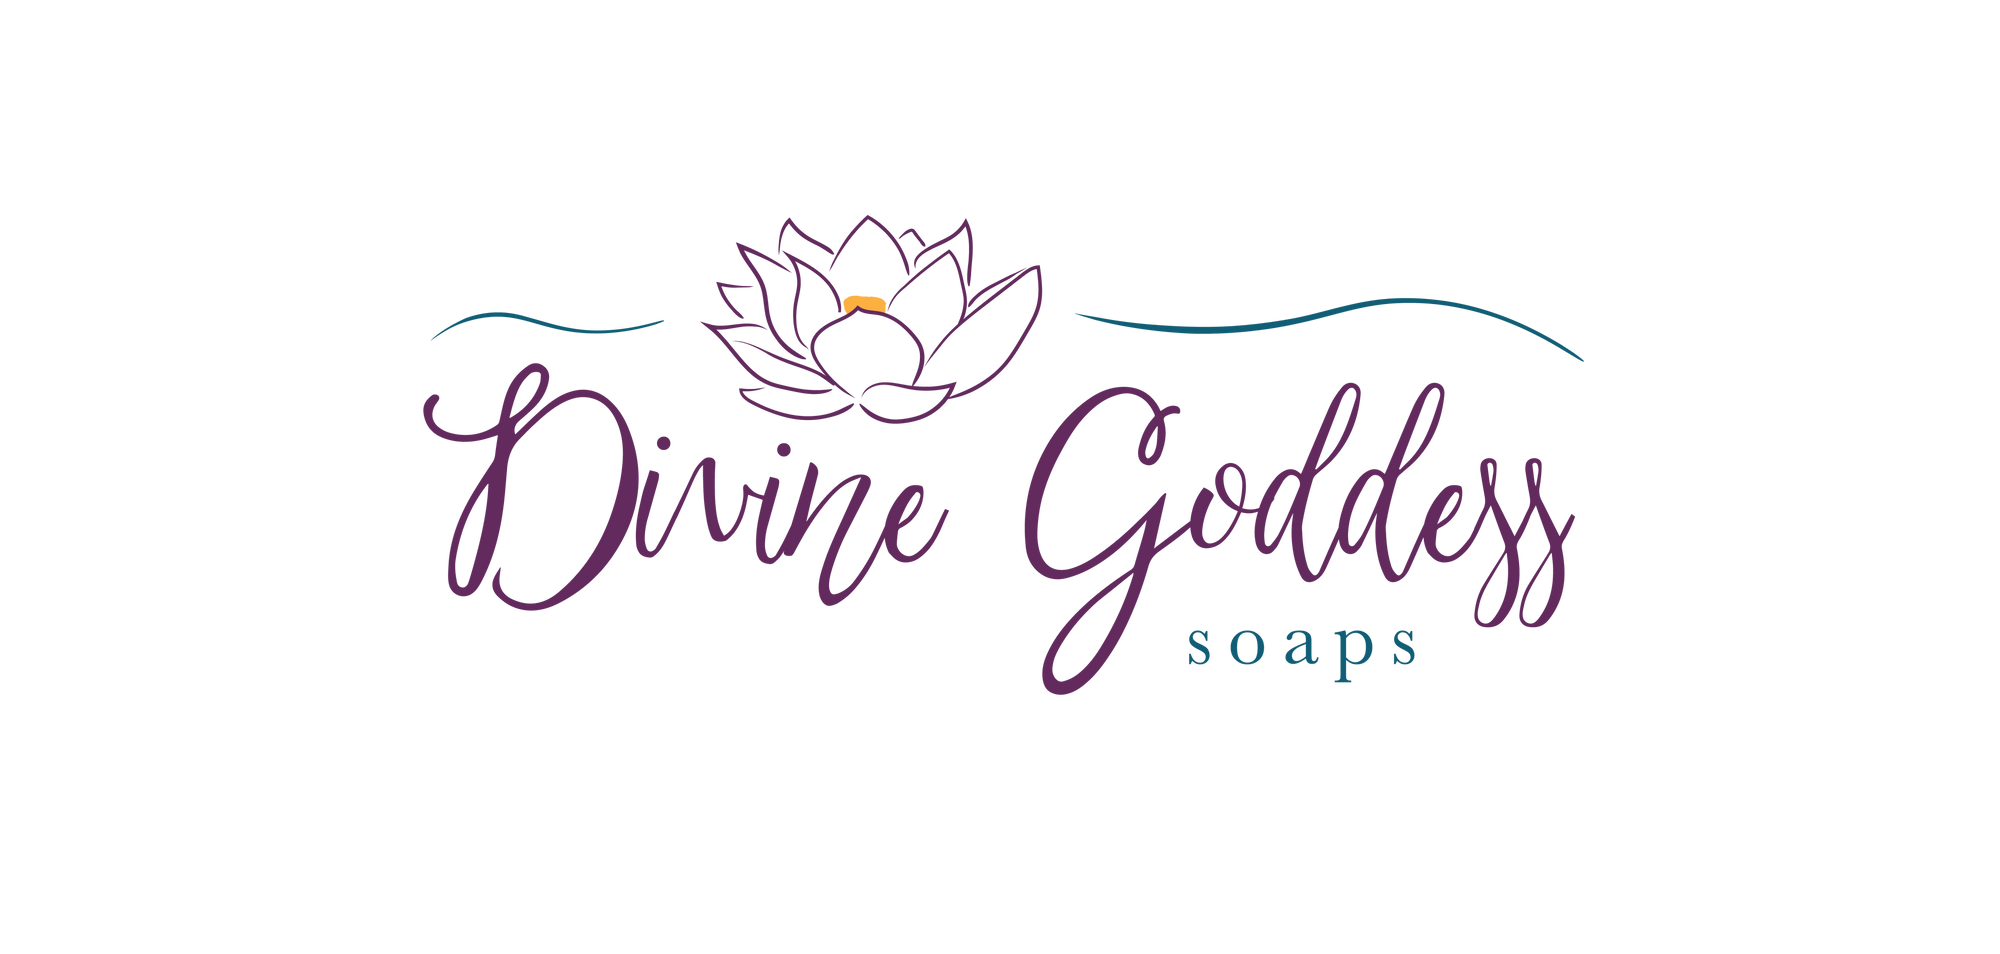 Spark Your Inner Goddess - Divine Goddess Soaps